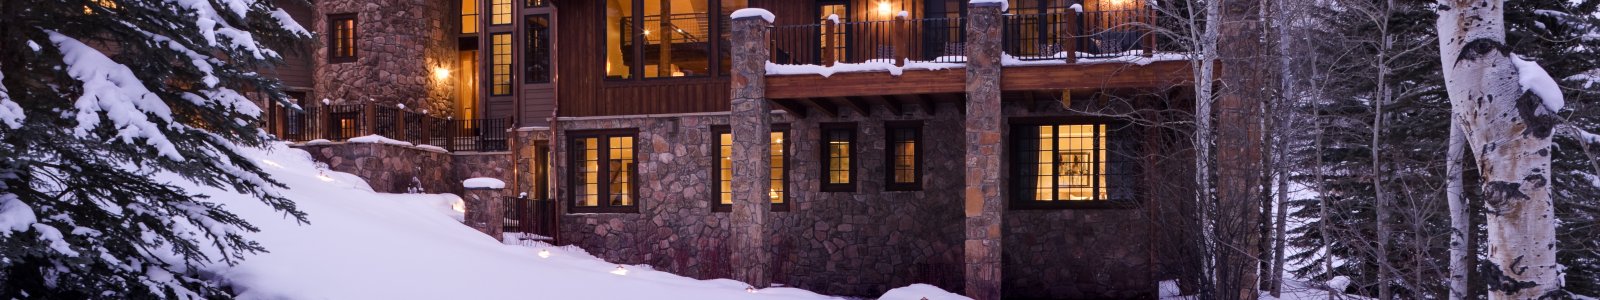 Aspen Vacation Rentals | Colorado Vacation Homes & Condos